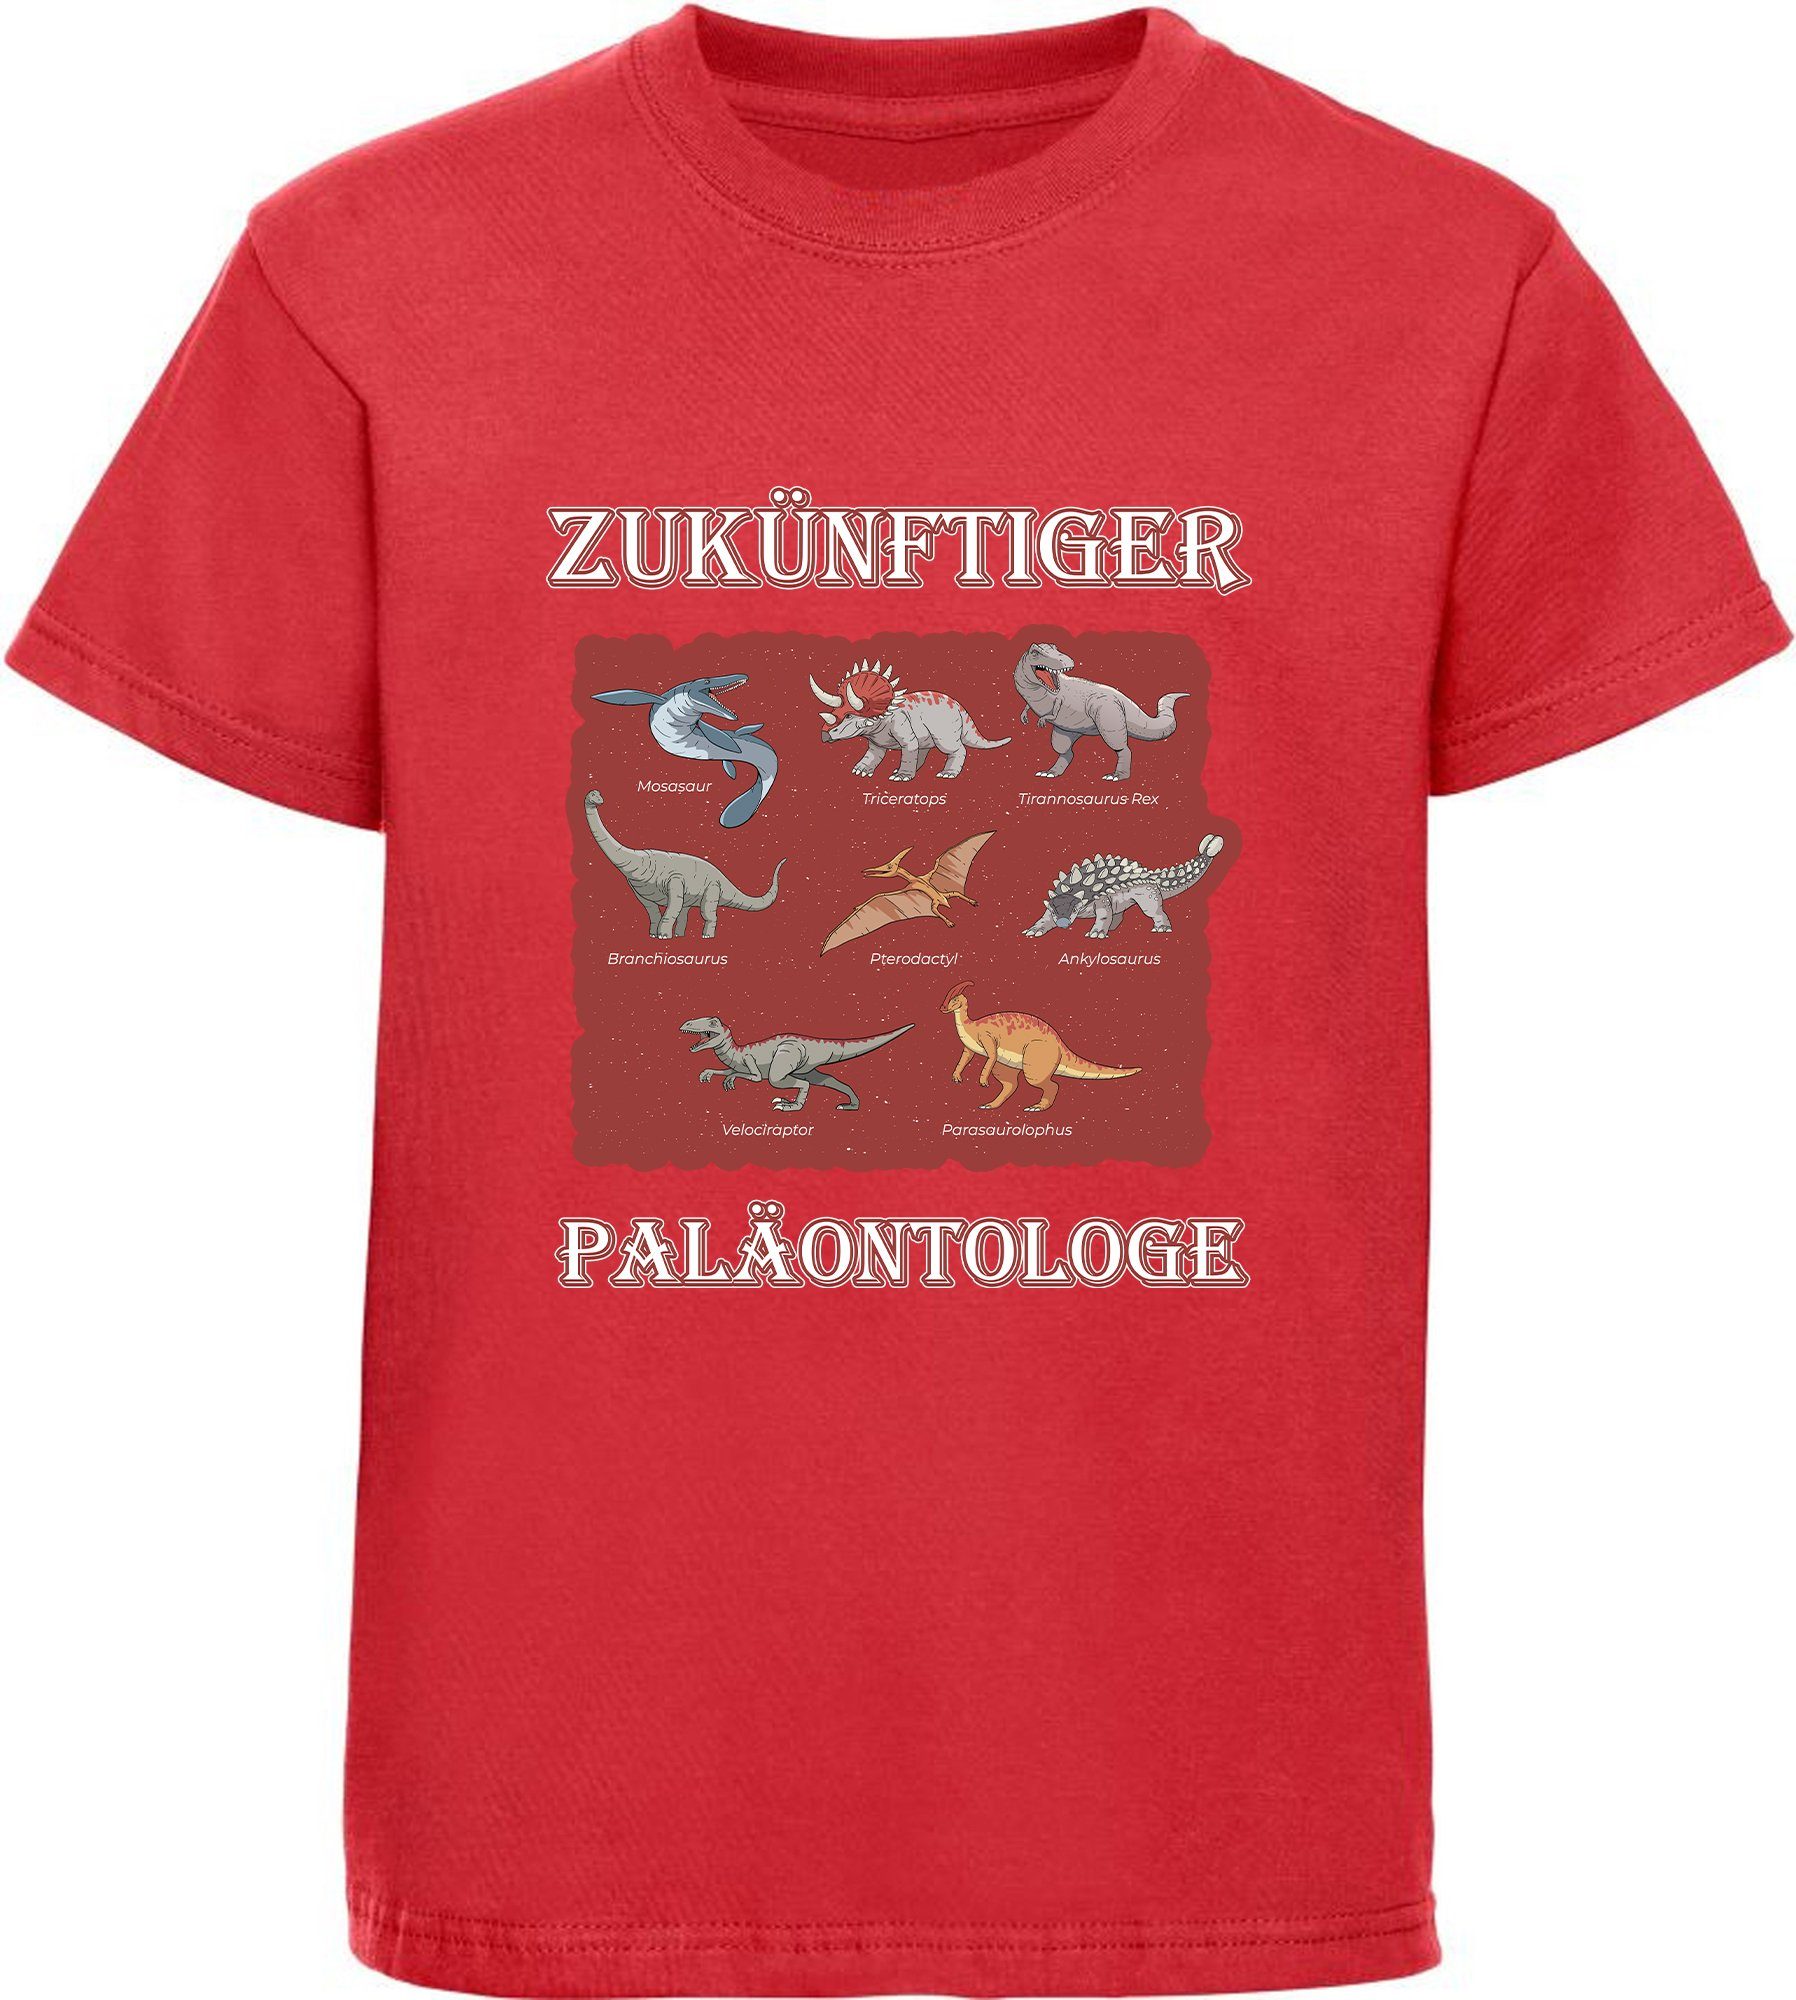 MyDesign24 T-Shirt bedrucktes Kinder T-Shirt Paläontologe mit vielen Dinosauriern 100% Baumwolle mit Dino Aufdruck, rot i50